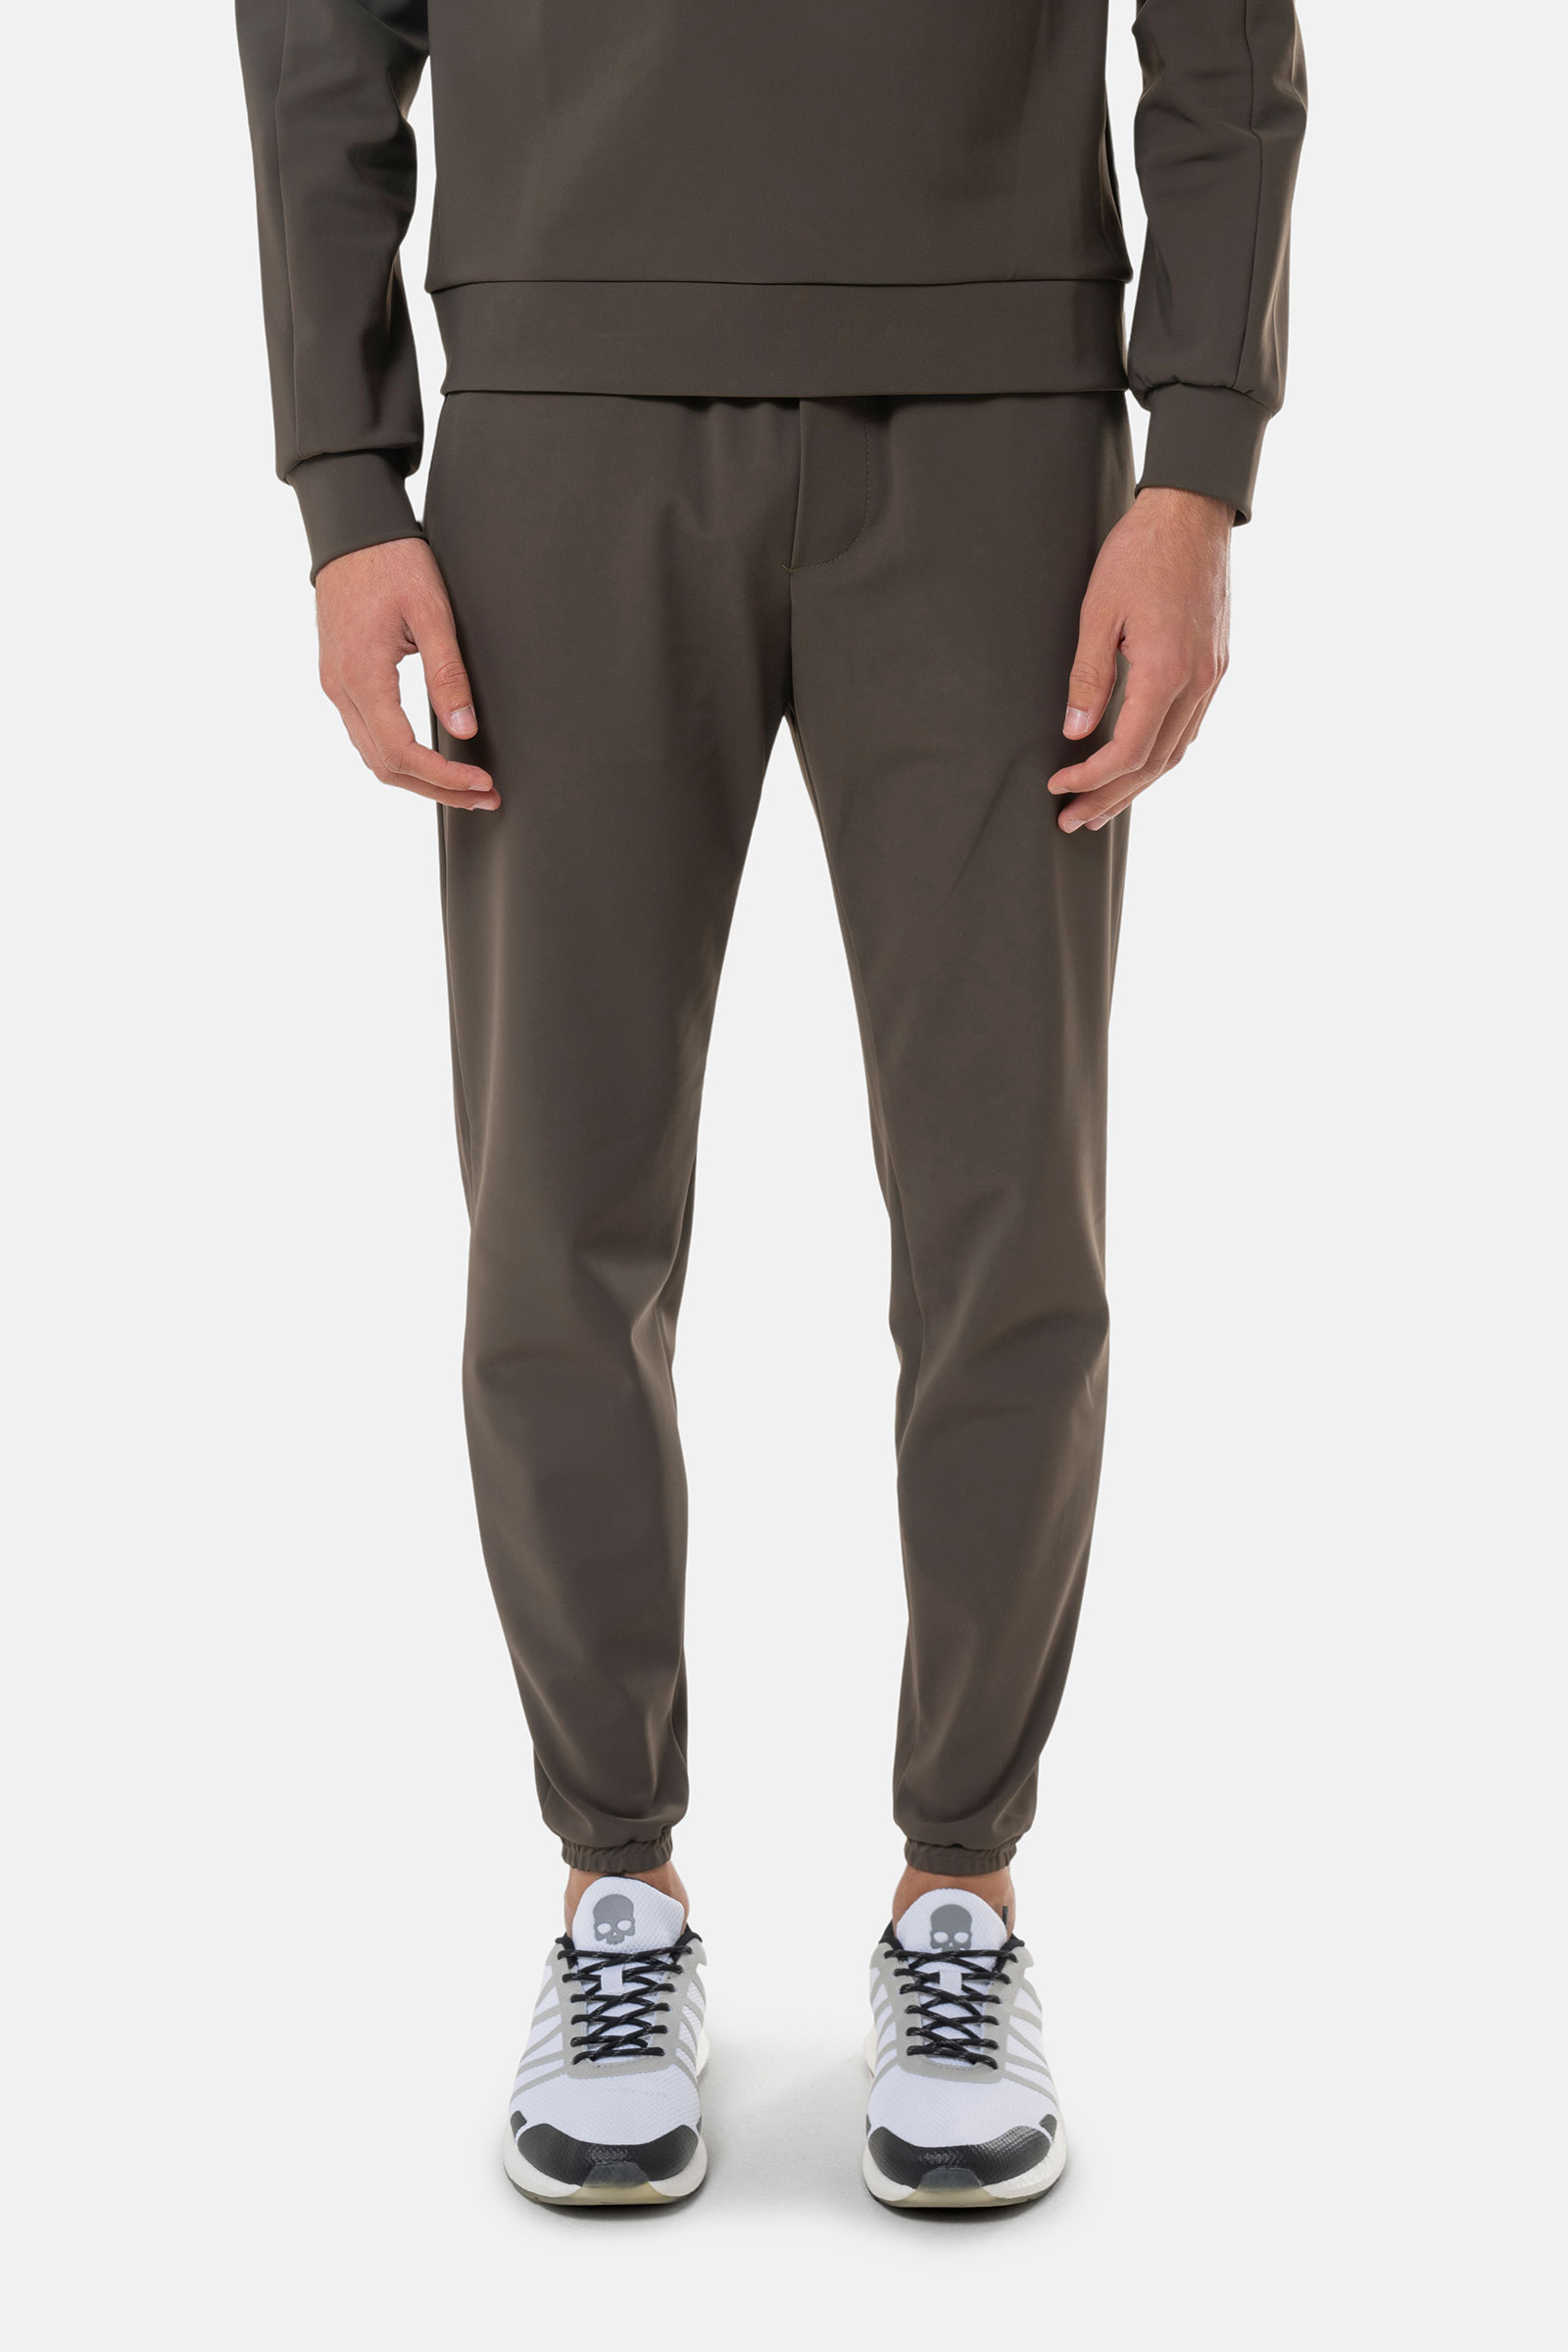 TRACKSUIT PANTS - GREY - Hydrogen - Luxury Sportwear